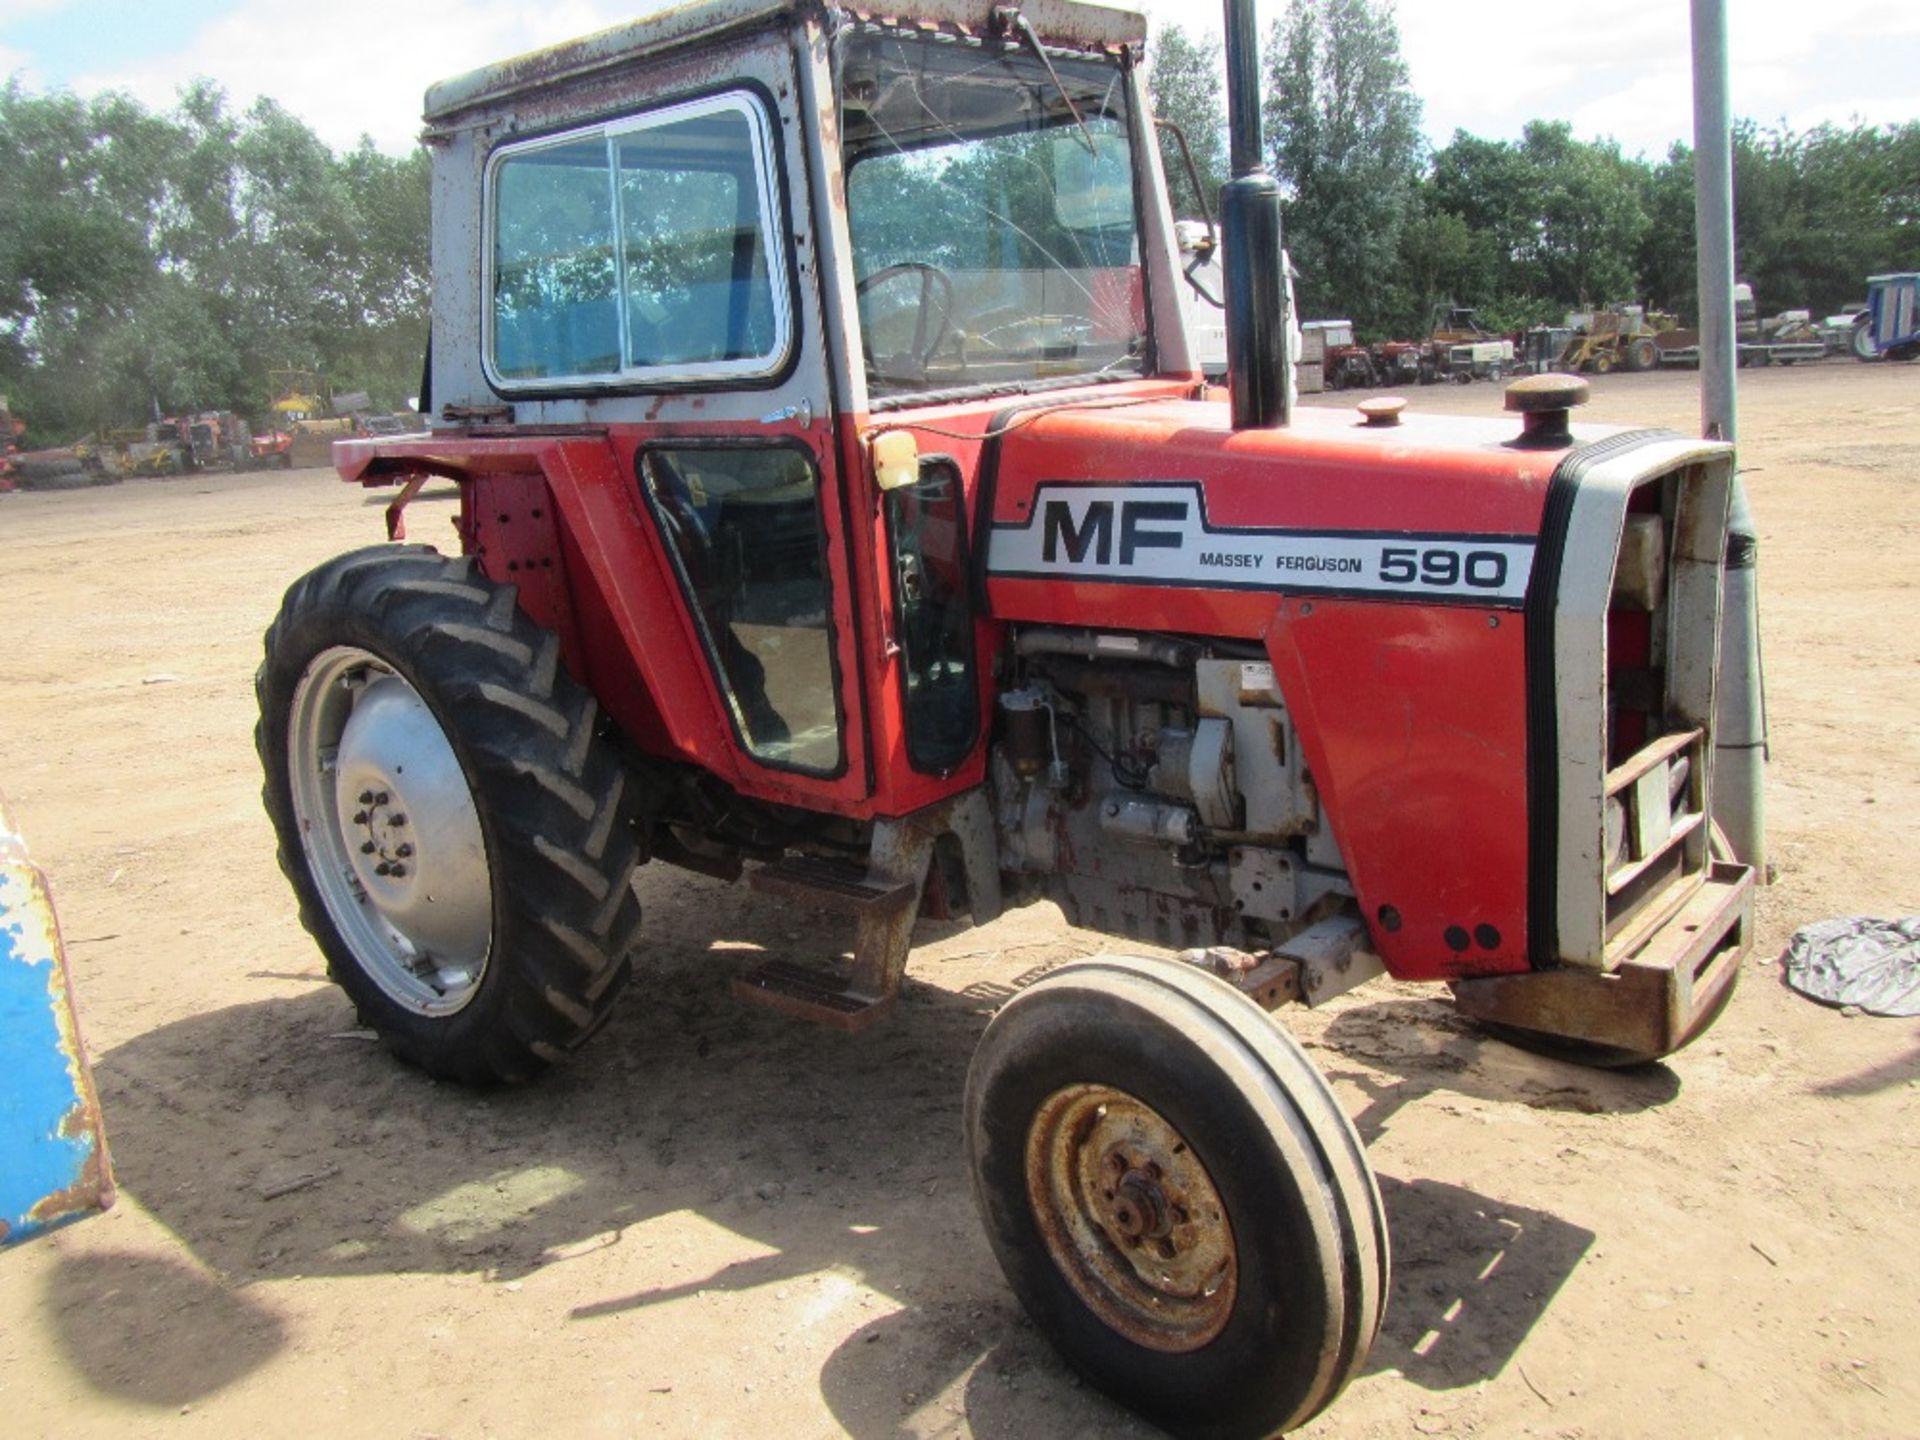 Massey Ferguson 590 2wd Tractor c/w 2 door cab Reg. No. HAN 433W - Image 2 of 6